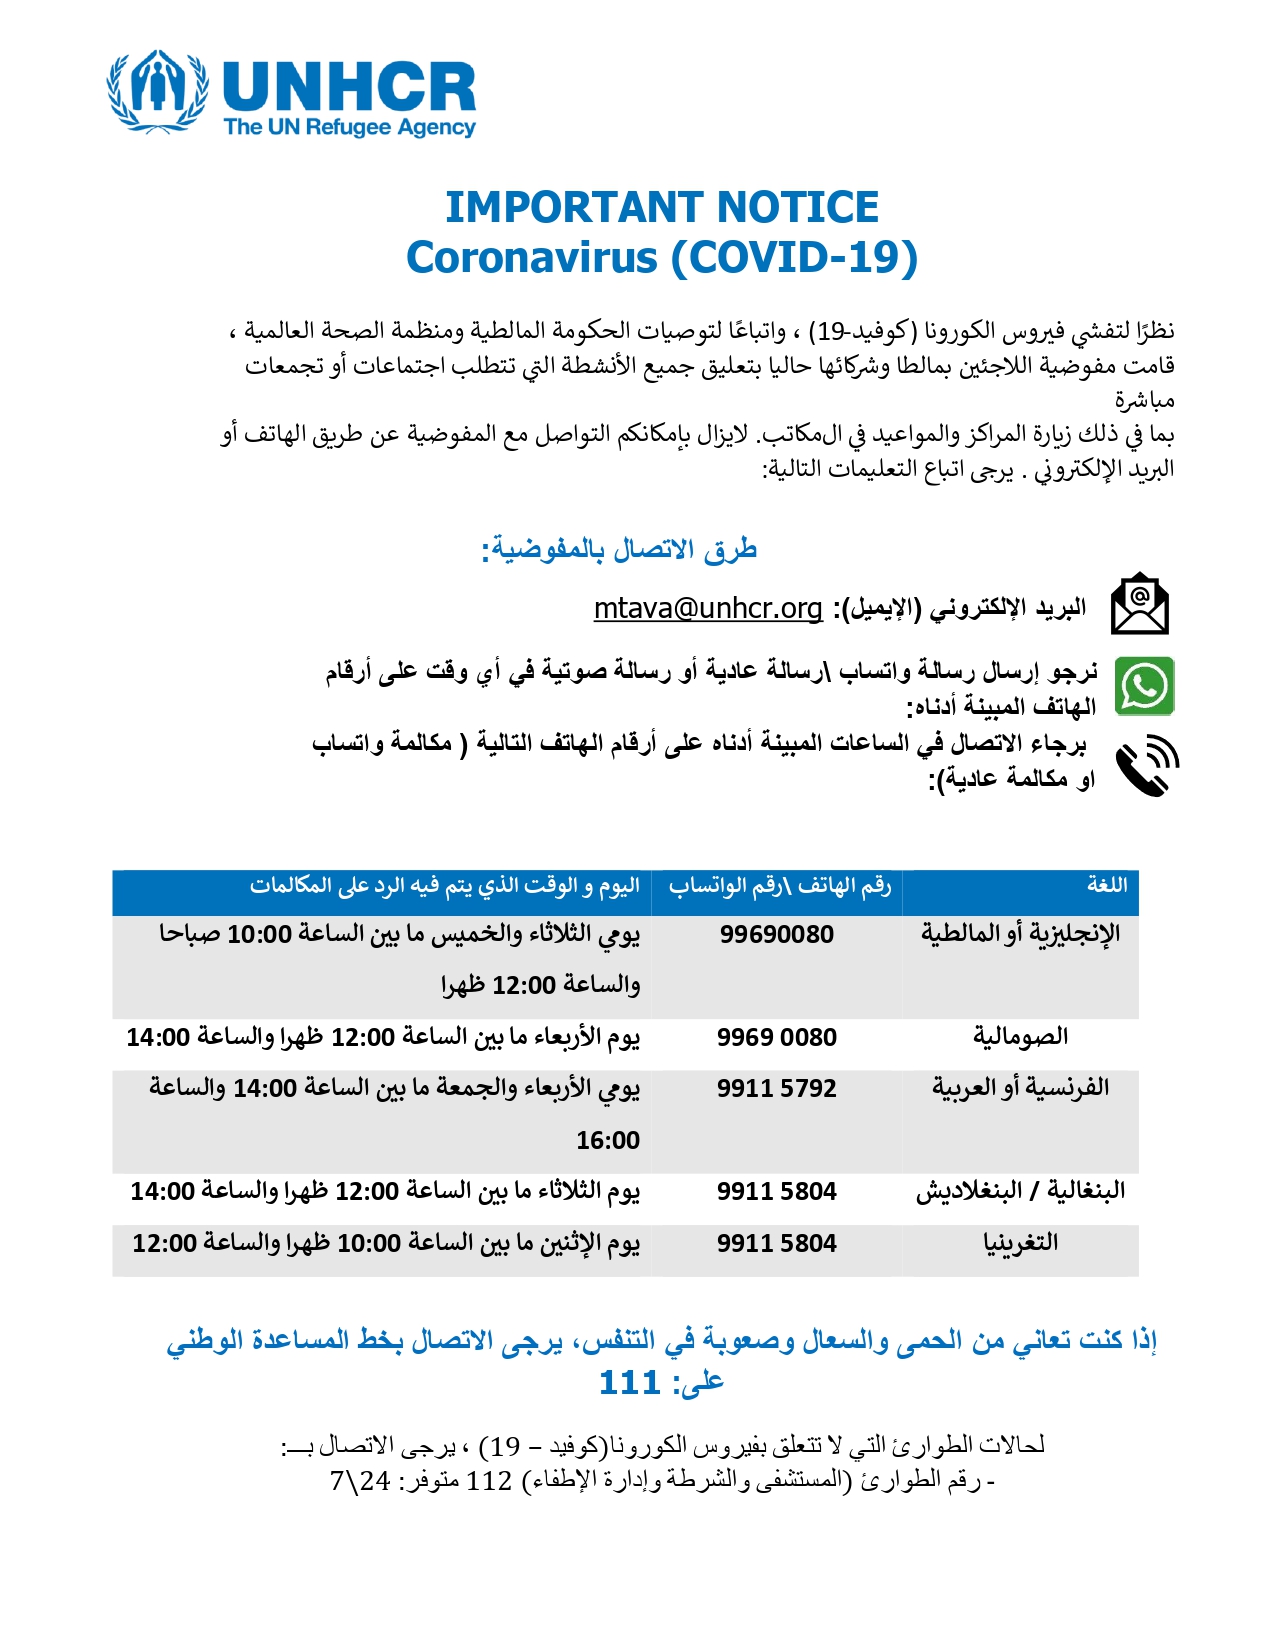 Poster Open Centres And Community 1 Unhcr Helpline Info Arabic Correct Unhcr Malta